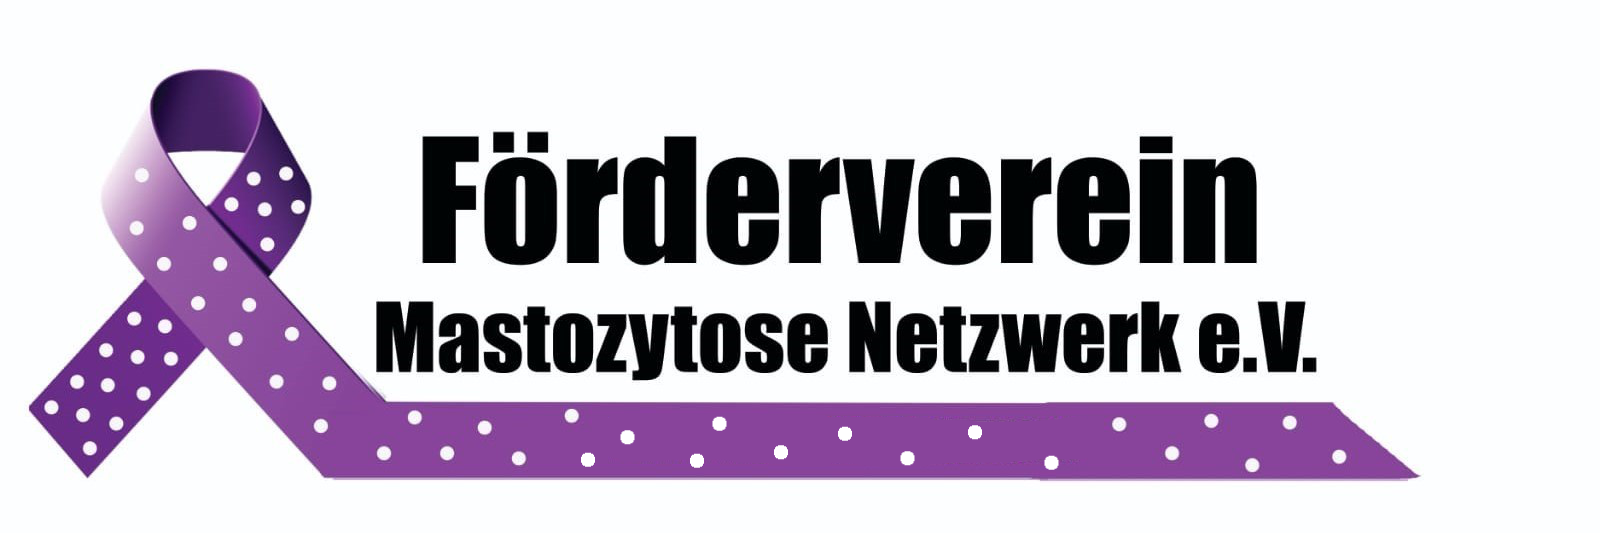 Förderverein Mastozytose Netzwerk e.V.